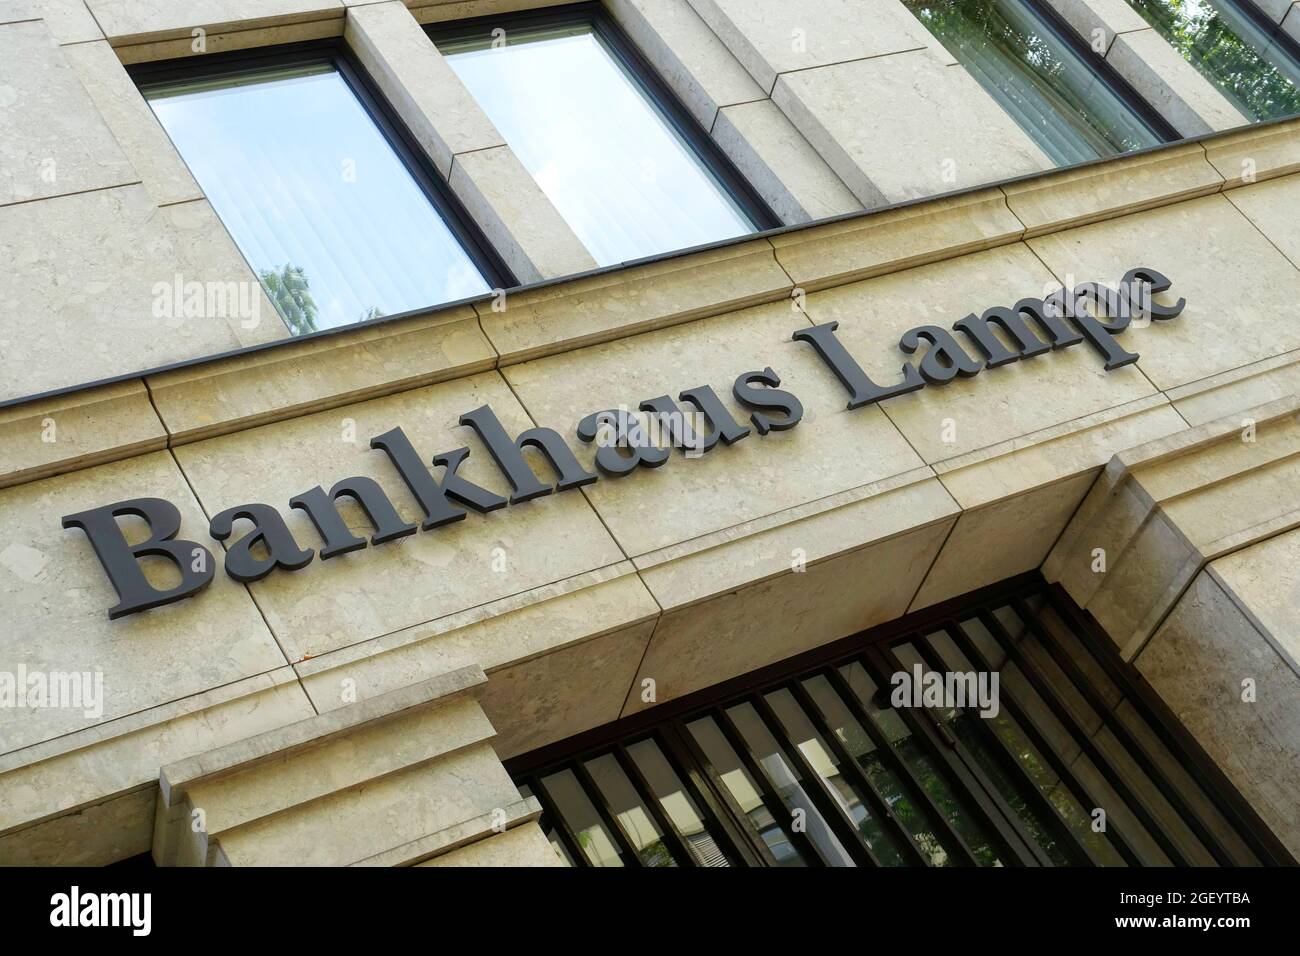 Bankhaus Lampe, Berlin, Germany Stock Photo